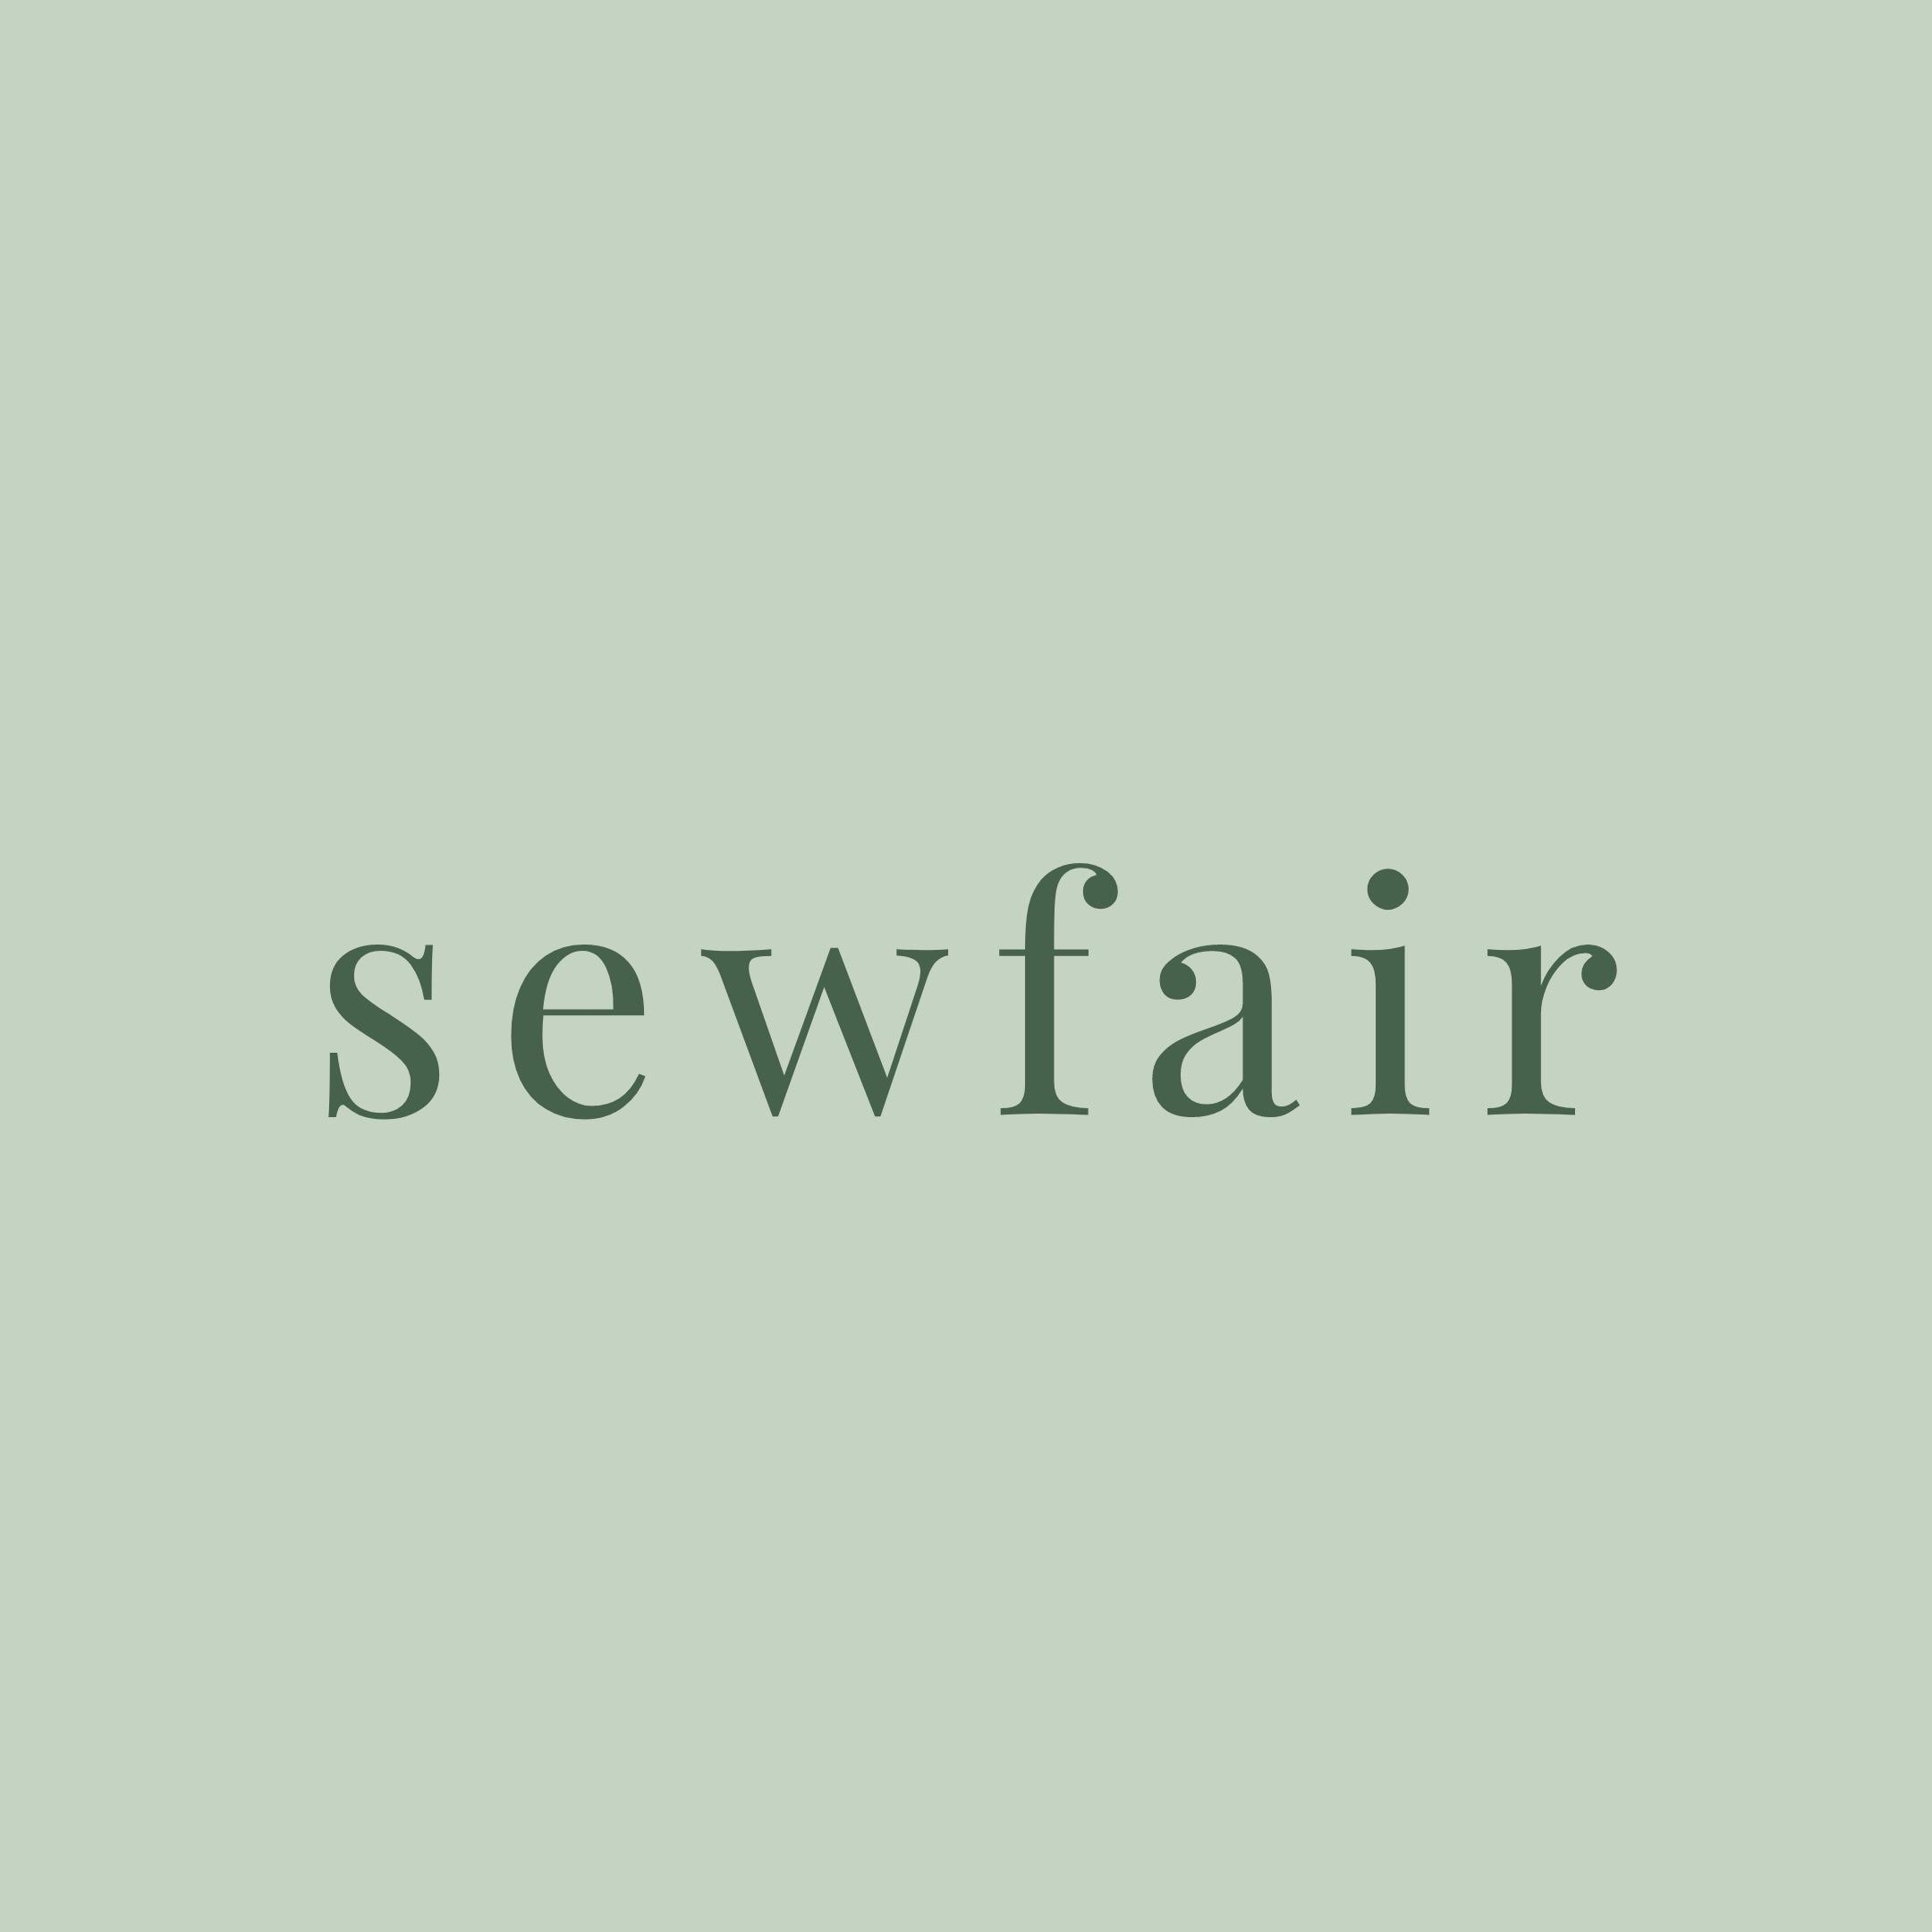 sewfair